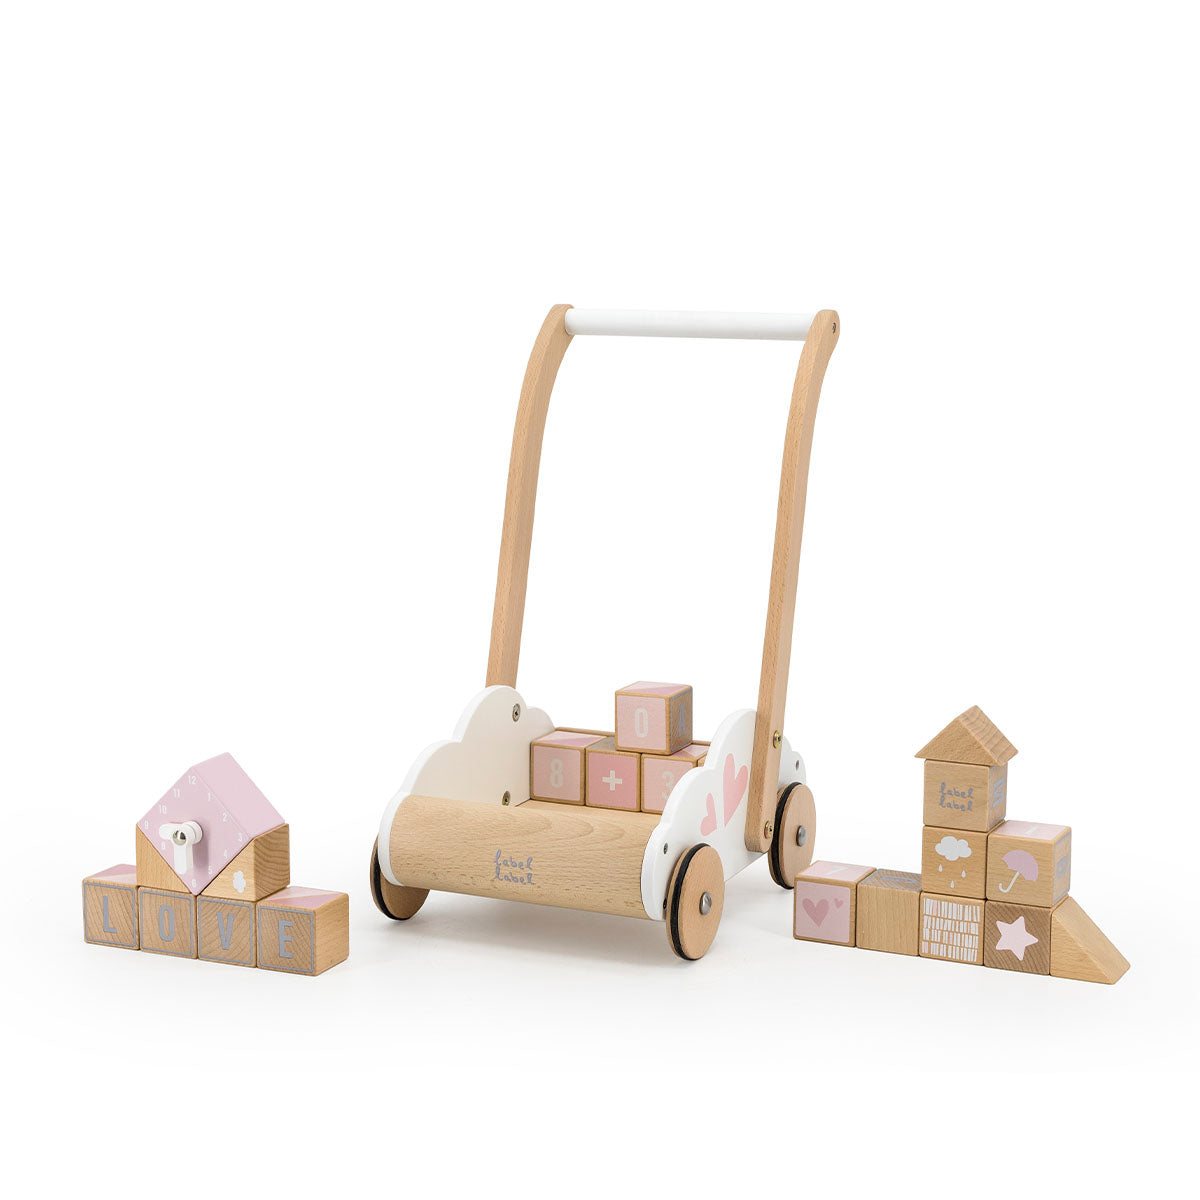 Wil je de eerste stapjes van jouw kindje stimuleren? Kies dan voor de Label Label blokkenwagen roze: een houten loopwagen gevuld met maar liefst 20 bouwblokken. De blokkenwagen is gemaakt van duurzaam FSC-hout. VanZus.